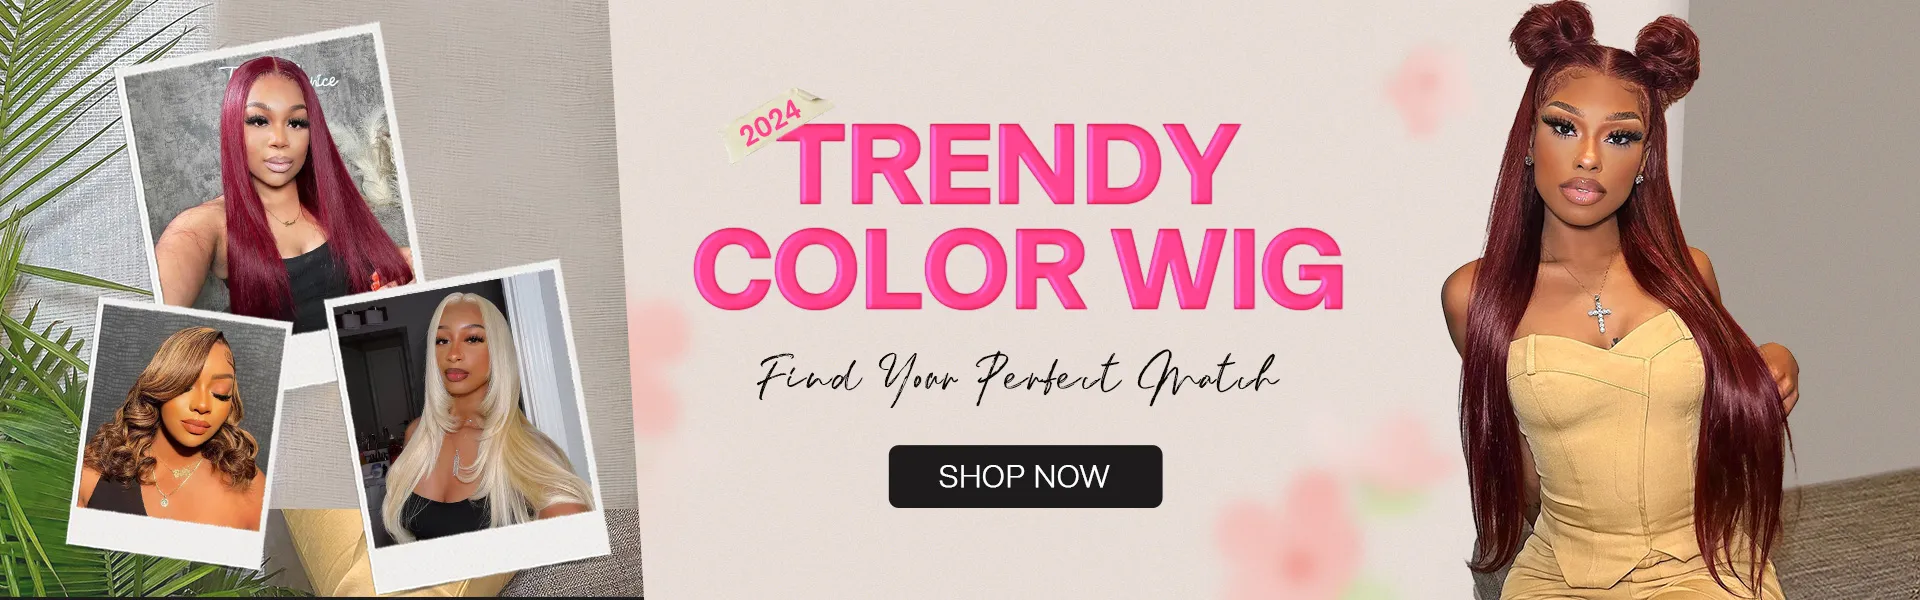 recool trendy color wig sale